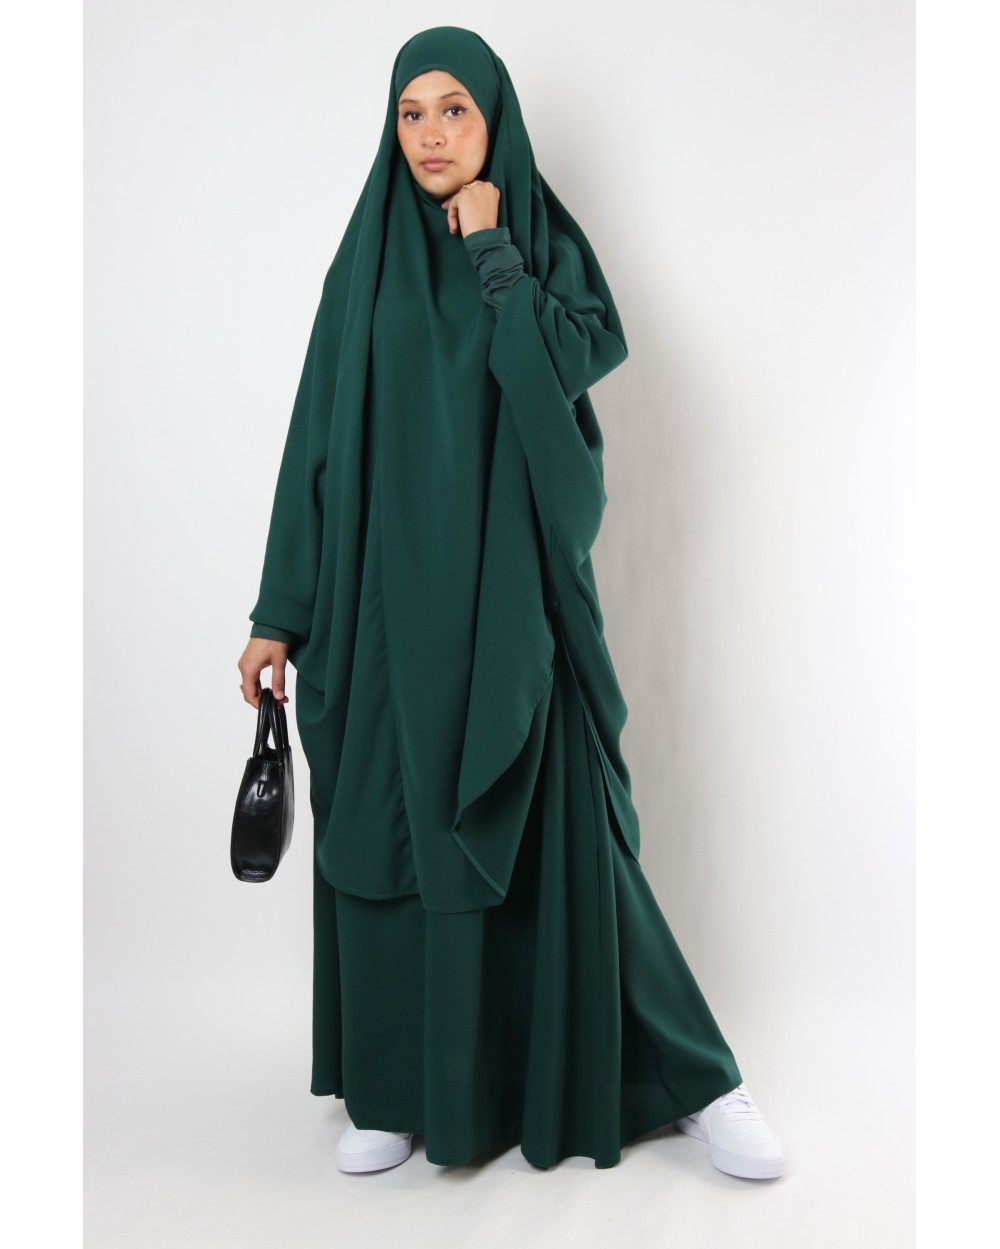 Jilbab Joumana set with skirt